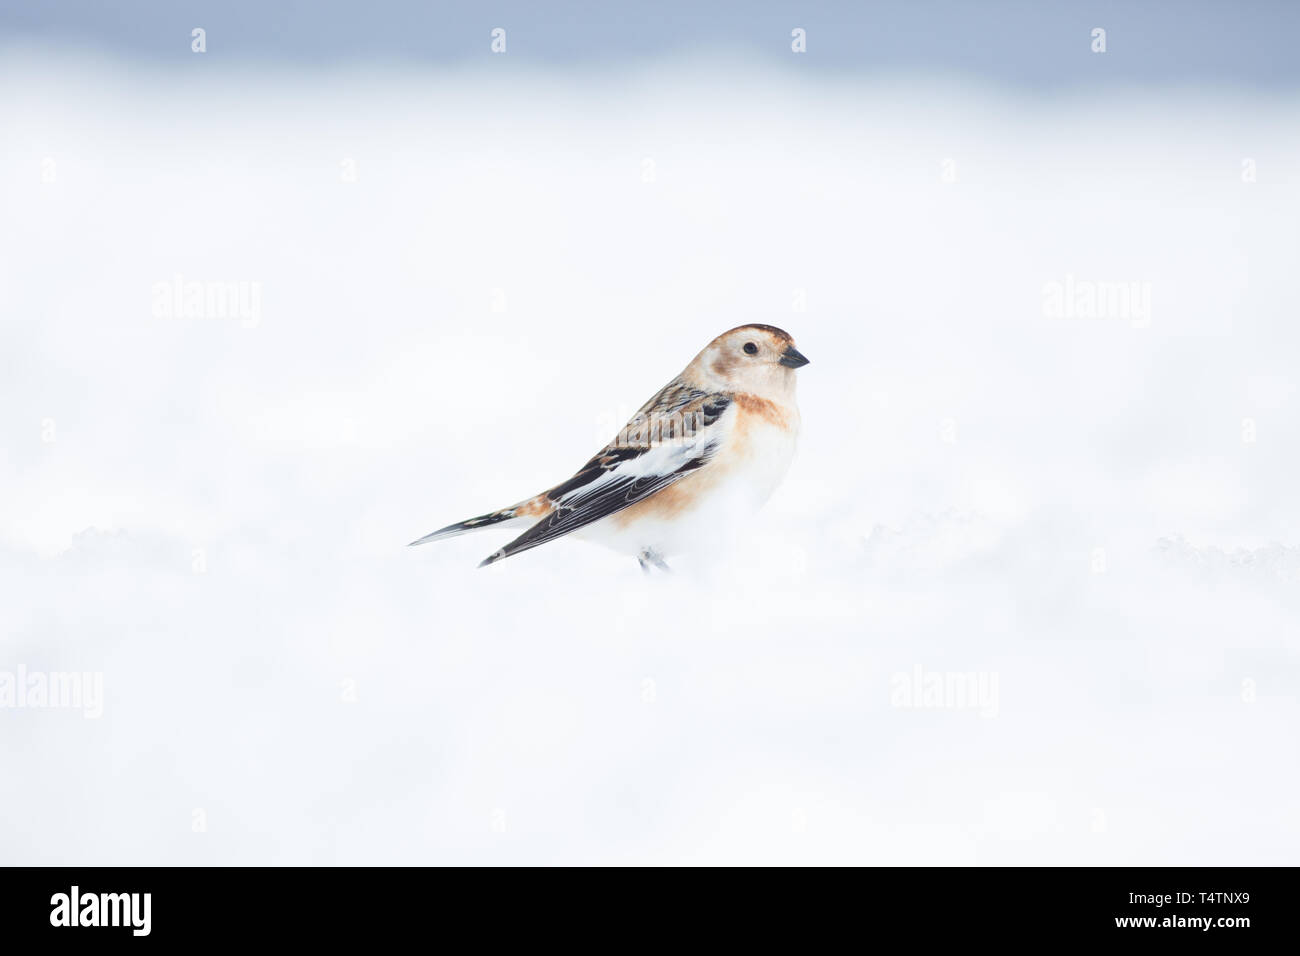 Snow bunting sul Ben Nevis, un uccello artico essi esistono sulle cime in Scozia Foto Stock